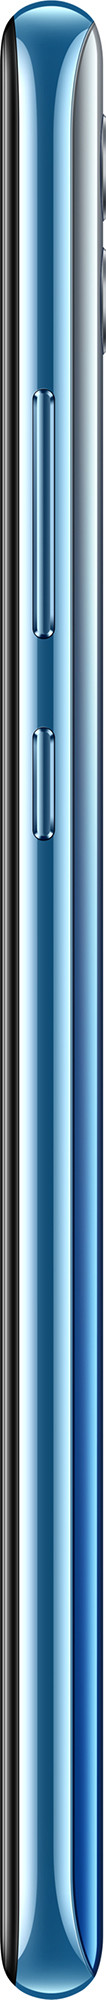 Смартфон Honor 10 Lite 3/32GB Небесно-голубой